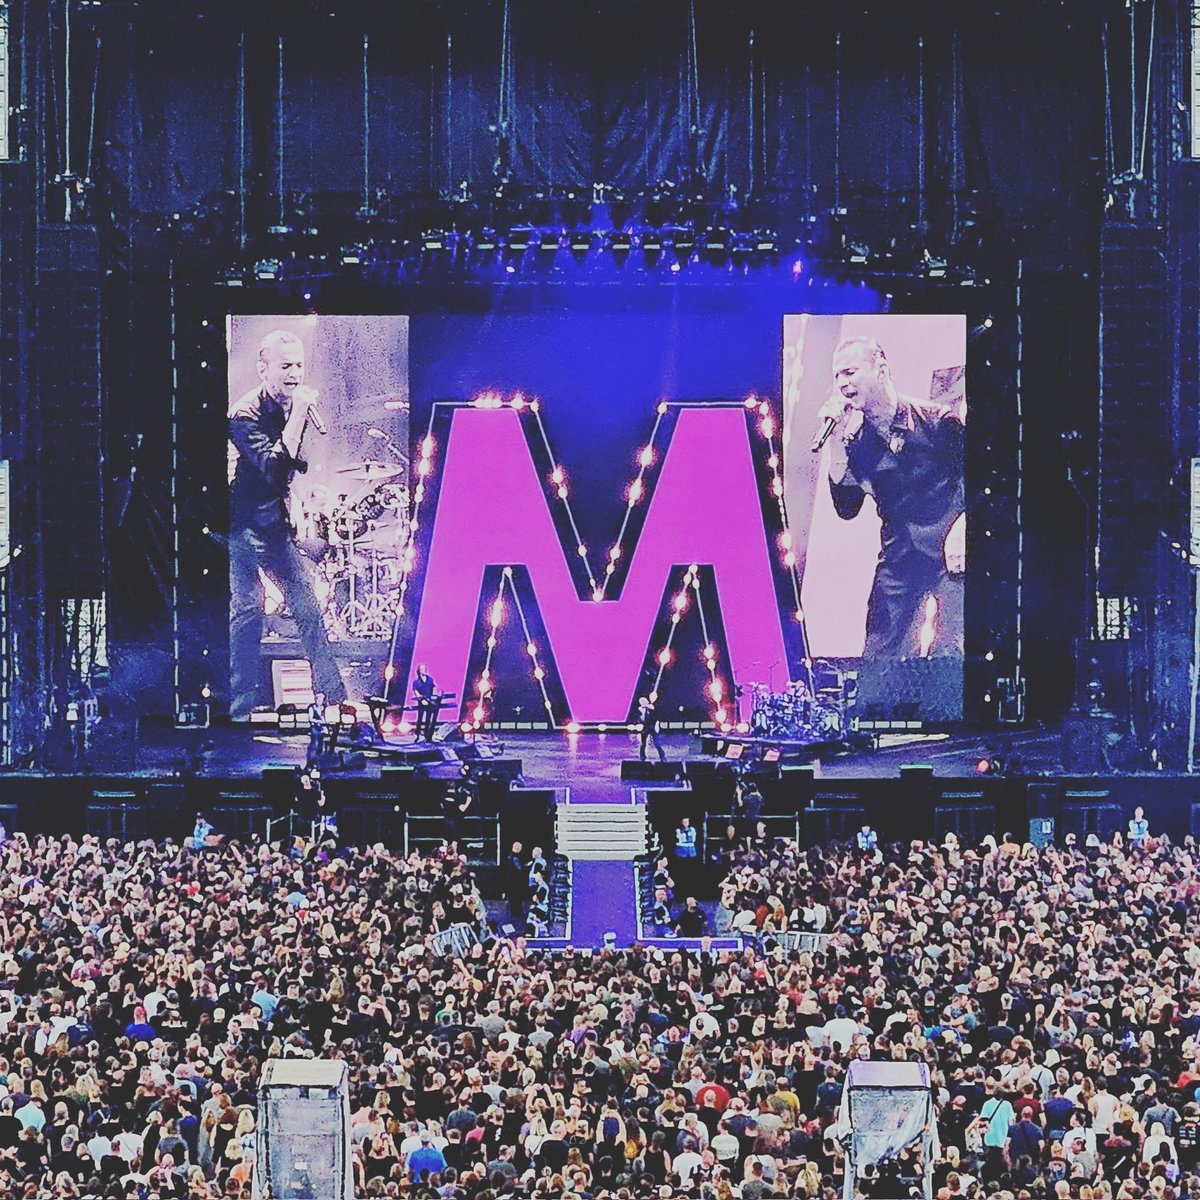 #DepecheMode 
It was fantastic 💜 
#MementoMoriTour 
#Frankfurt #Germany 
#DaveGahan